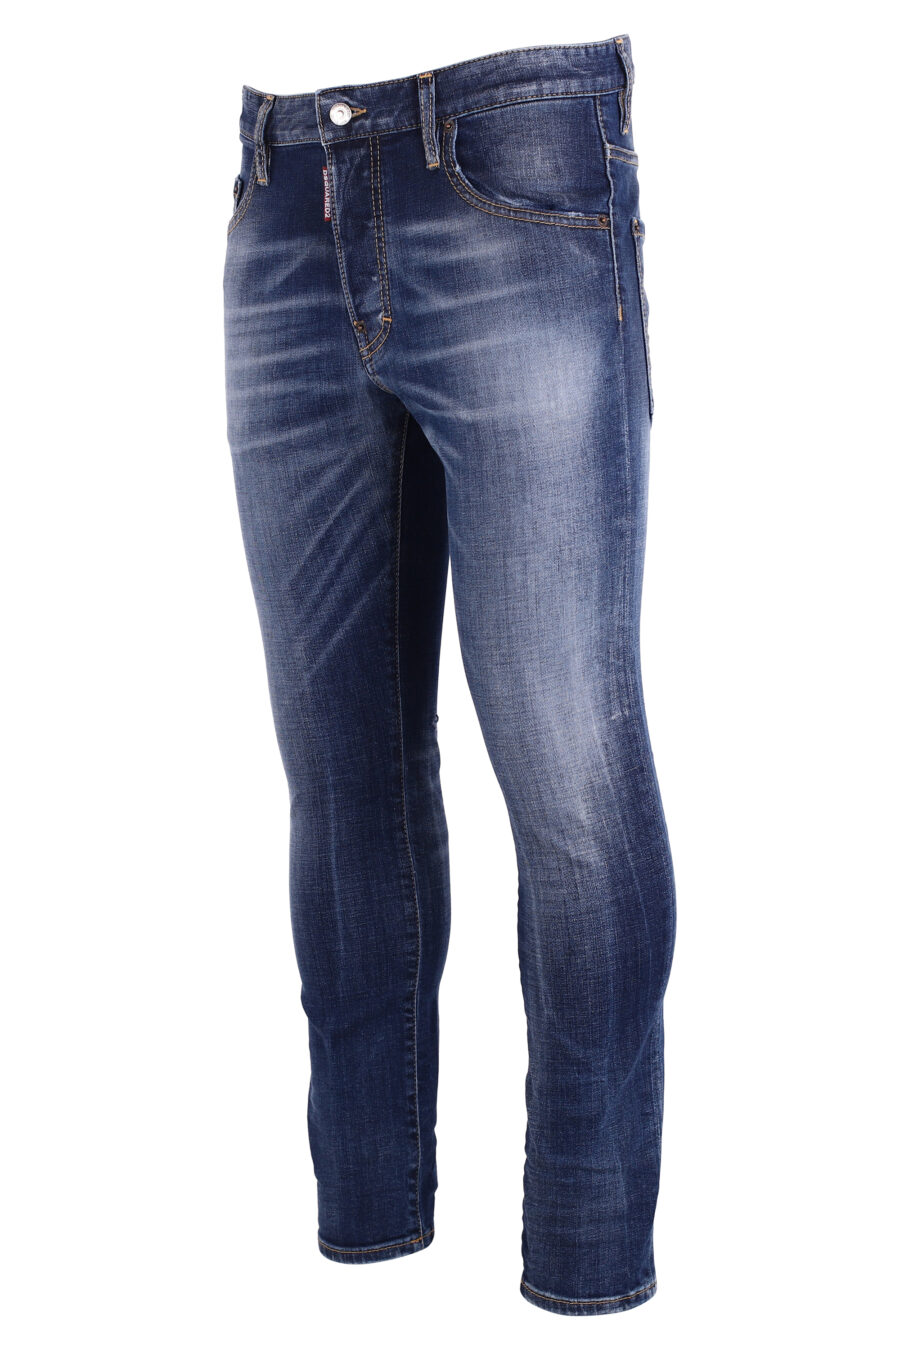 Pantalón vaquero "skater jean" azul desgastado - IMG 8991